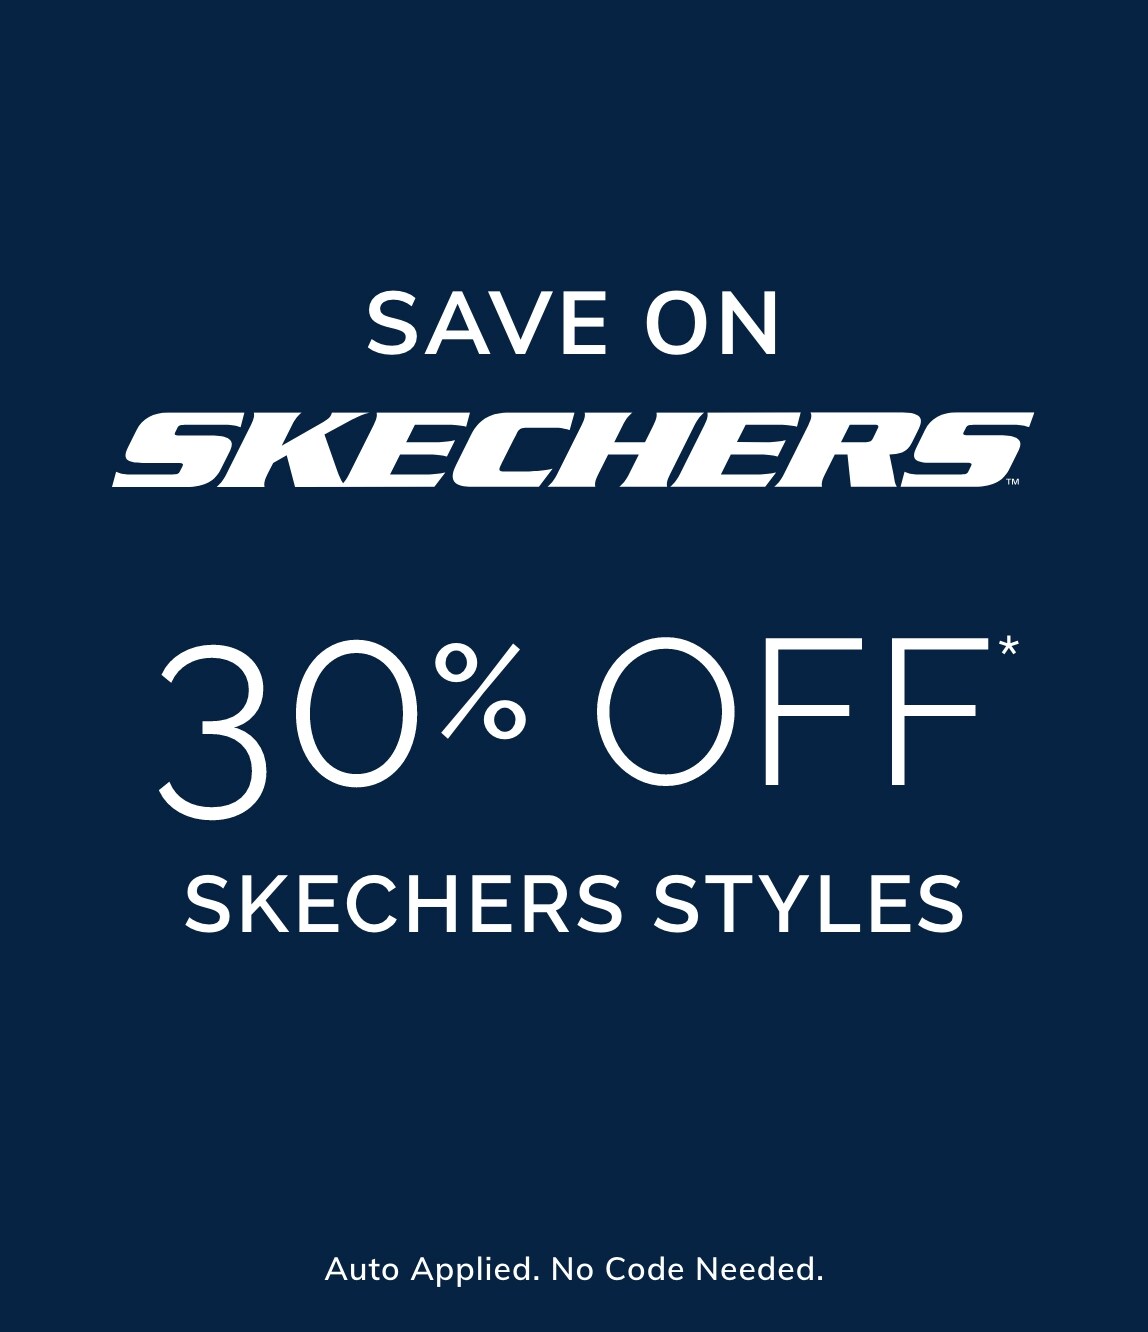 30% Off* SKECHERS Styles